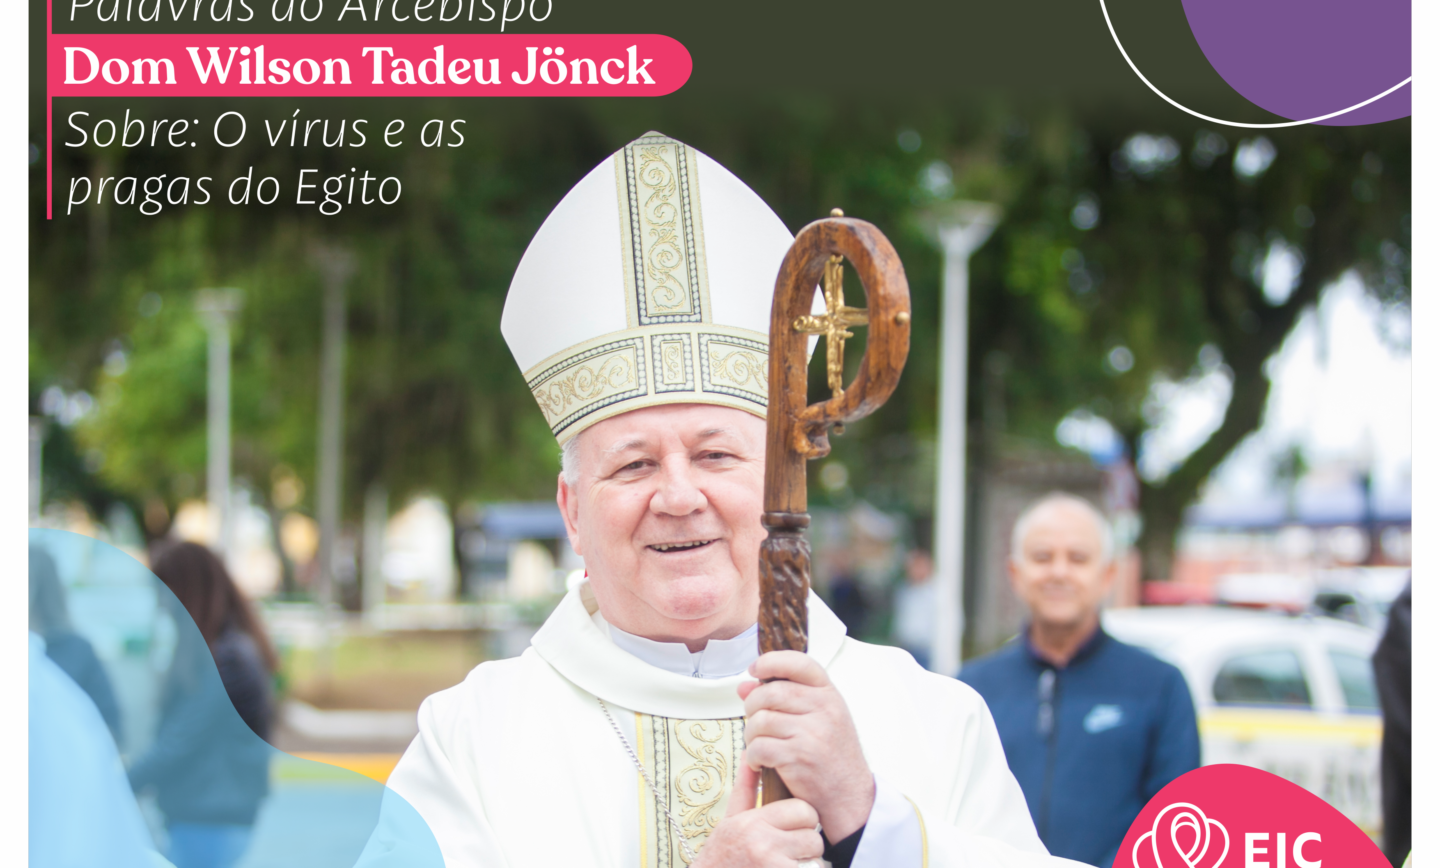 Arcebispo Dom Wilson Tadeu Jönck –  “O vírus e as pragas do Egito”